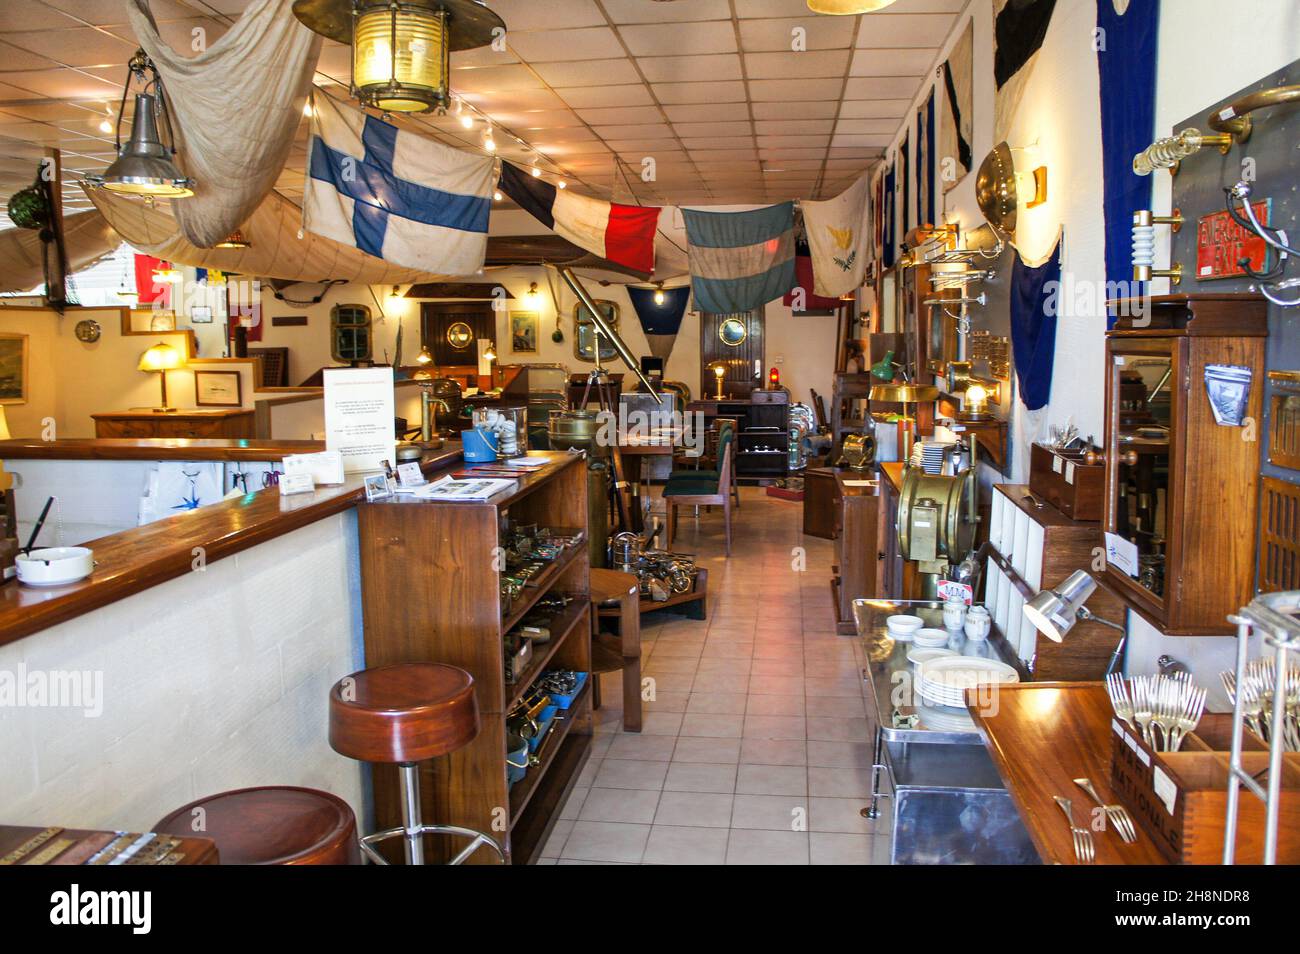 Marineshop für Antiquitäten- und Marinesalons in St. Malo, Frankreich, Flaggen, Schiffe Holzmöbel aus Messing, Ozeandampfer, Kreuzfahrtschiffe Bildfoto Stockfoto